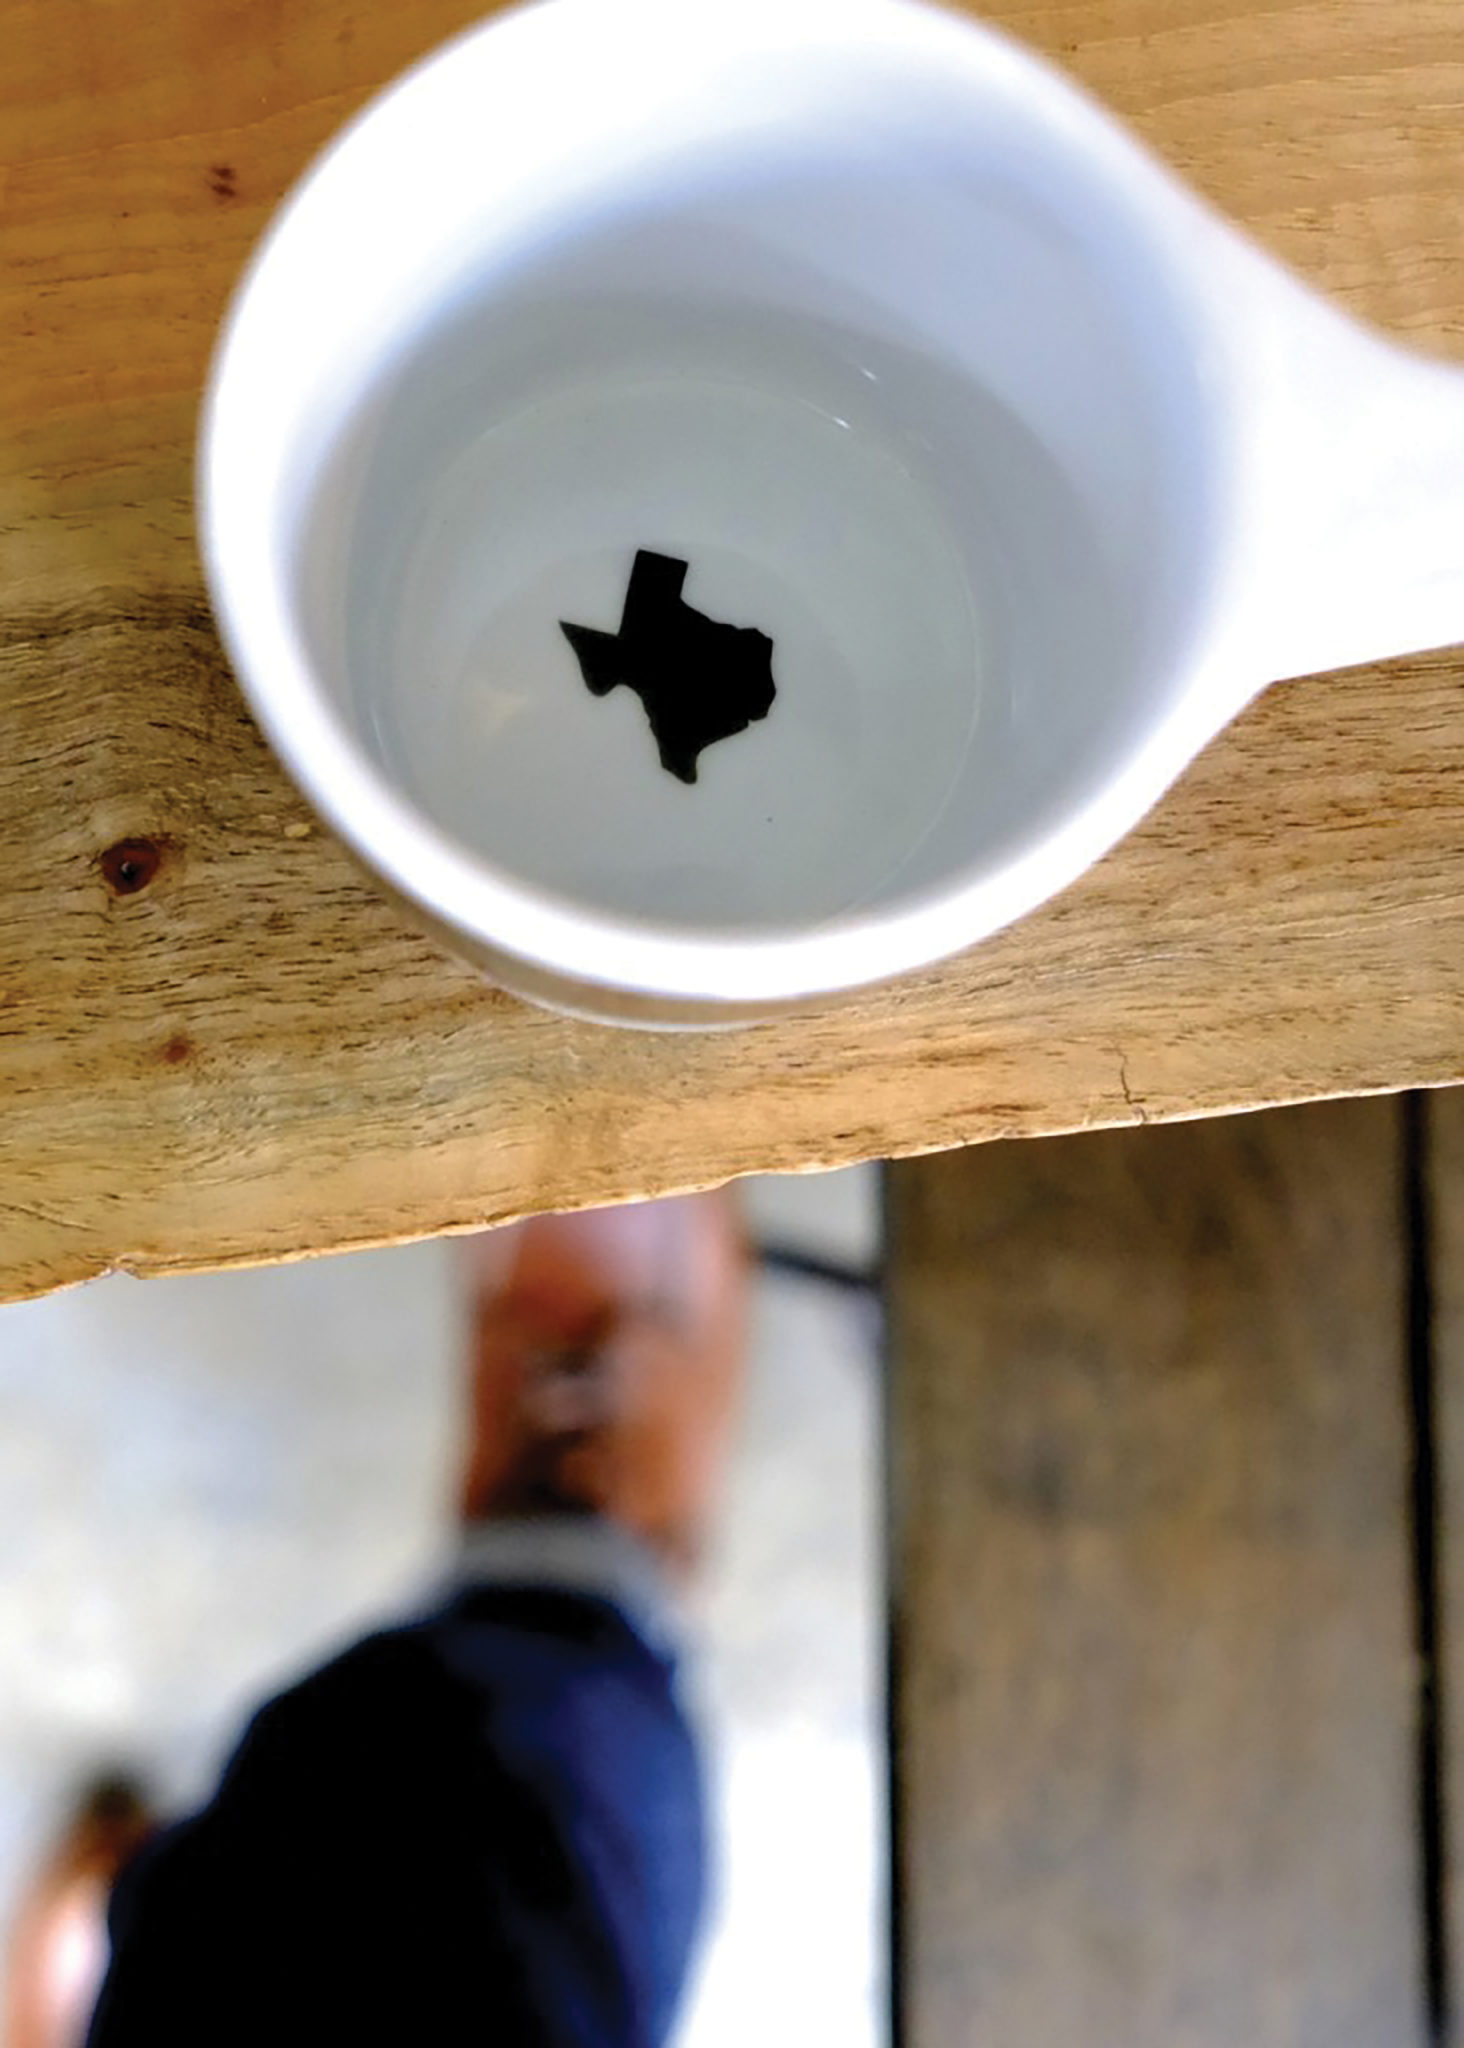 Coffee mug with Texas shape inside